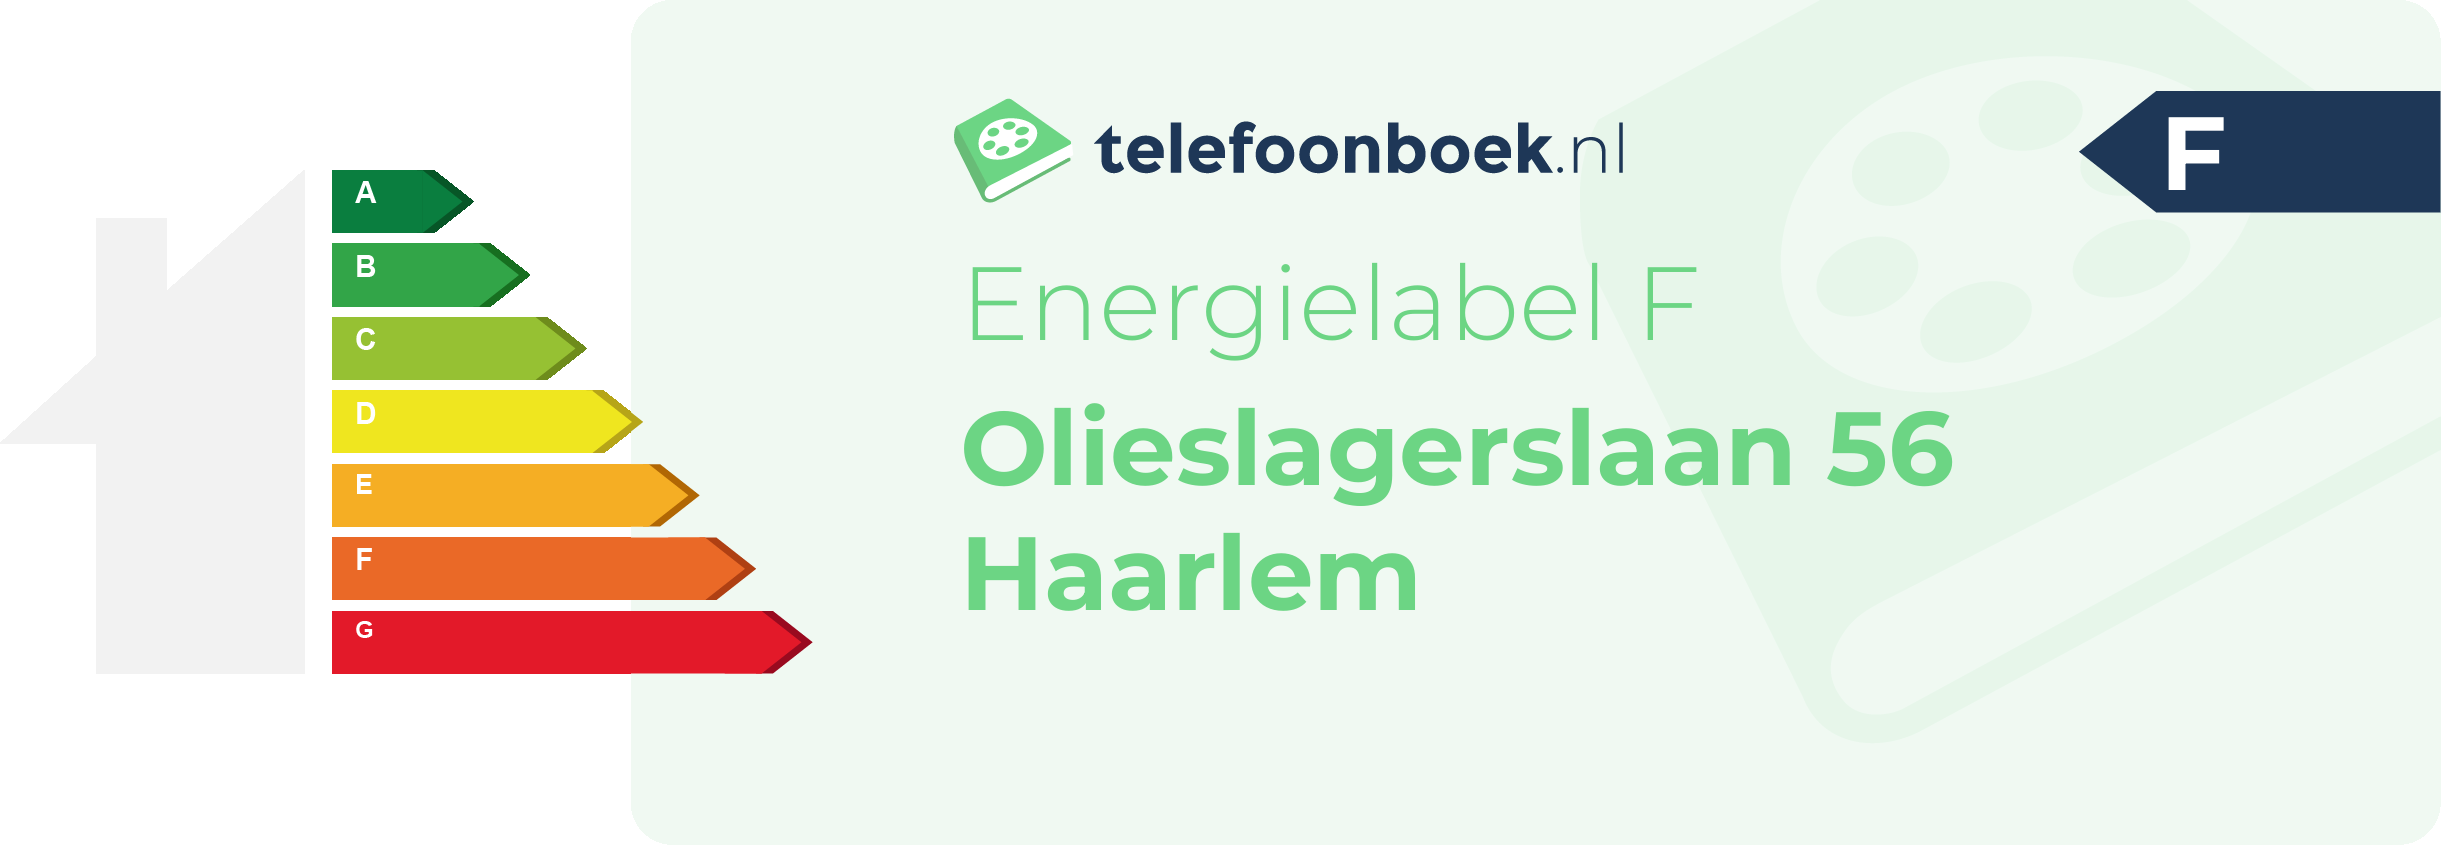 Energielabel Olieslagerslaan 56 Haarlem